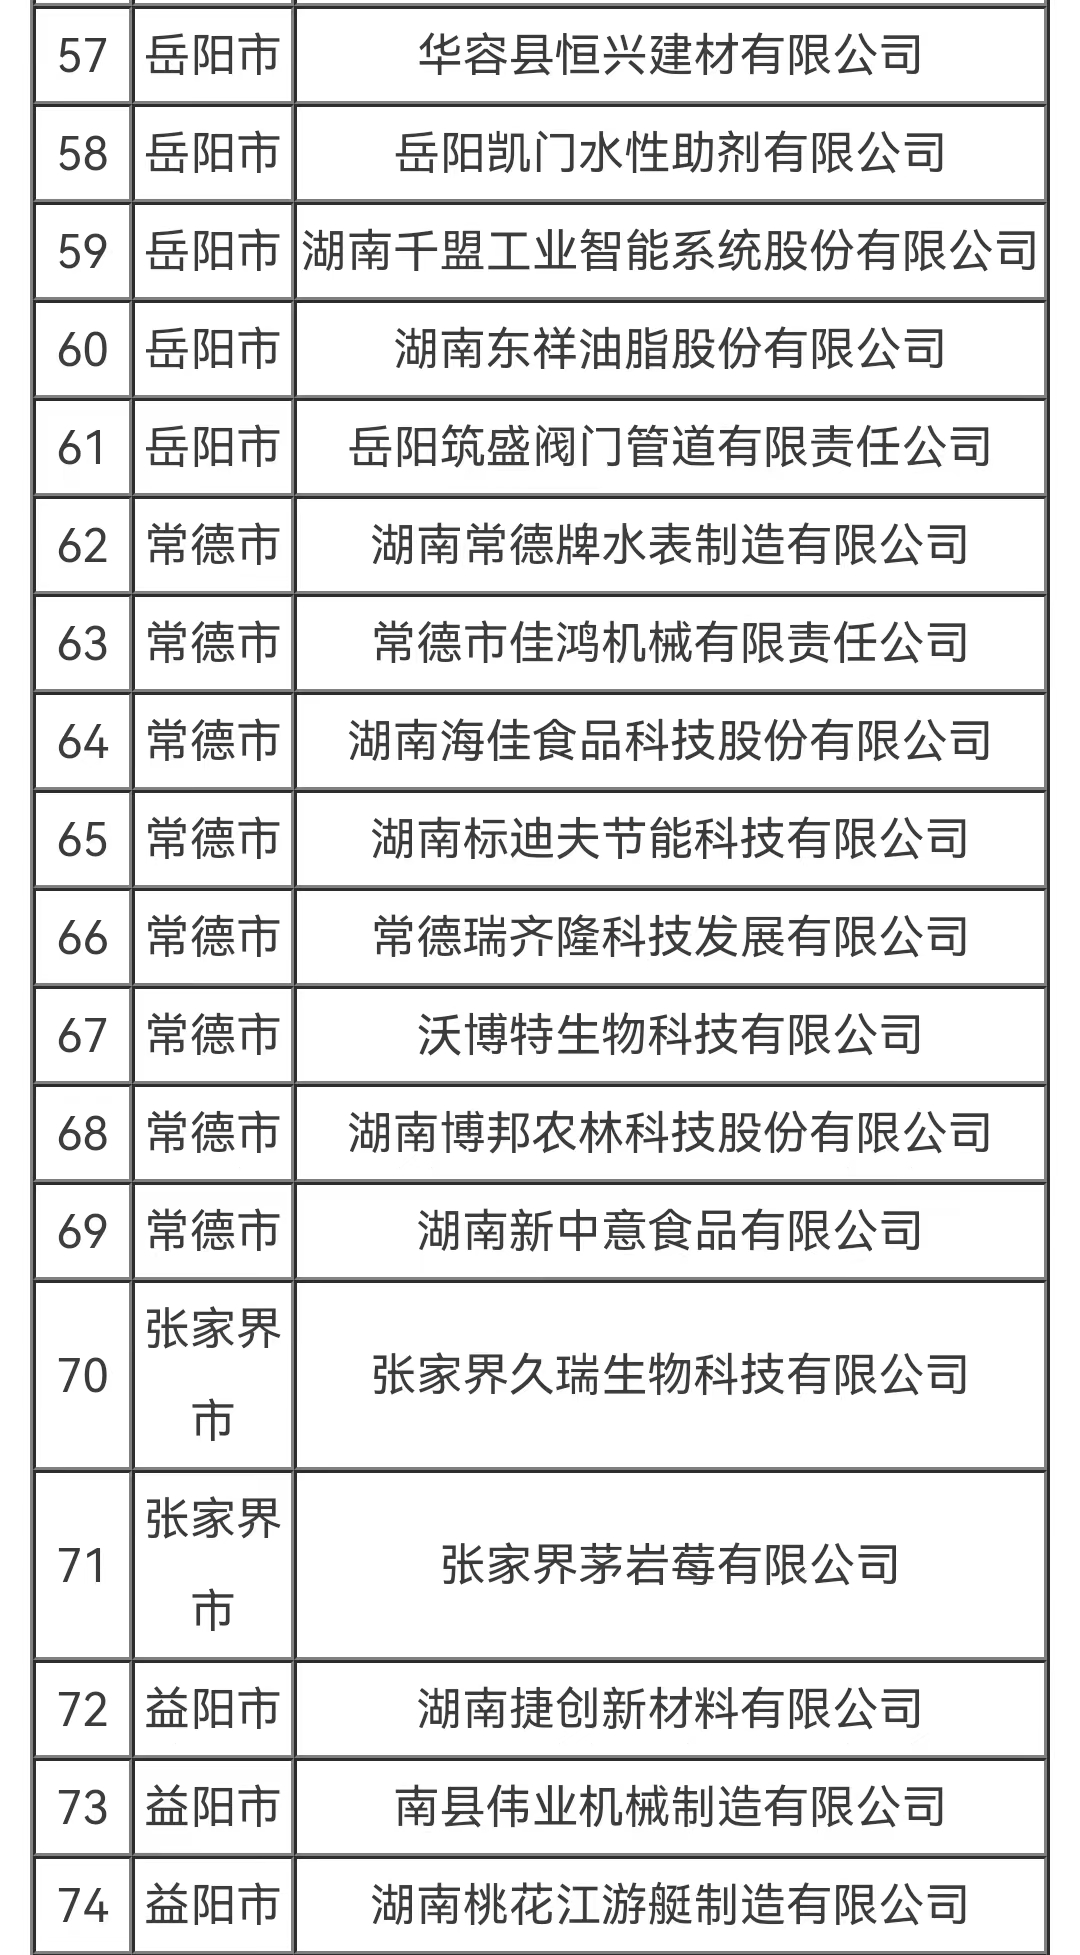 百家企业入选“湖湘精品”中小企业品牌能力提升行动2022年试点名单